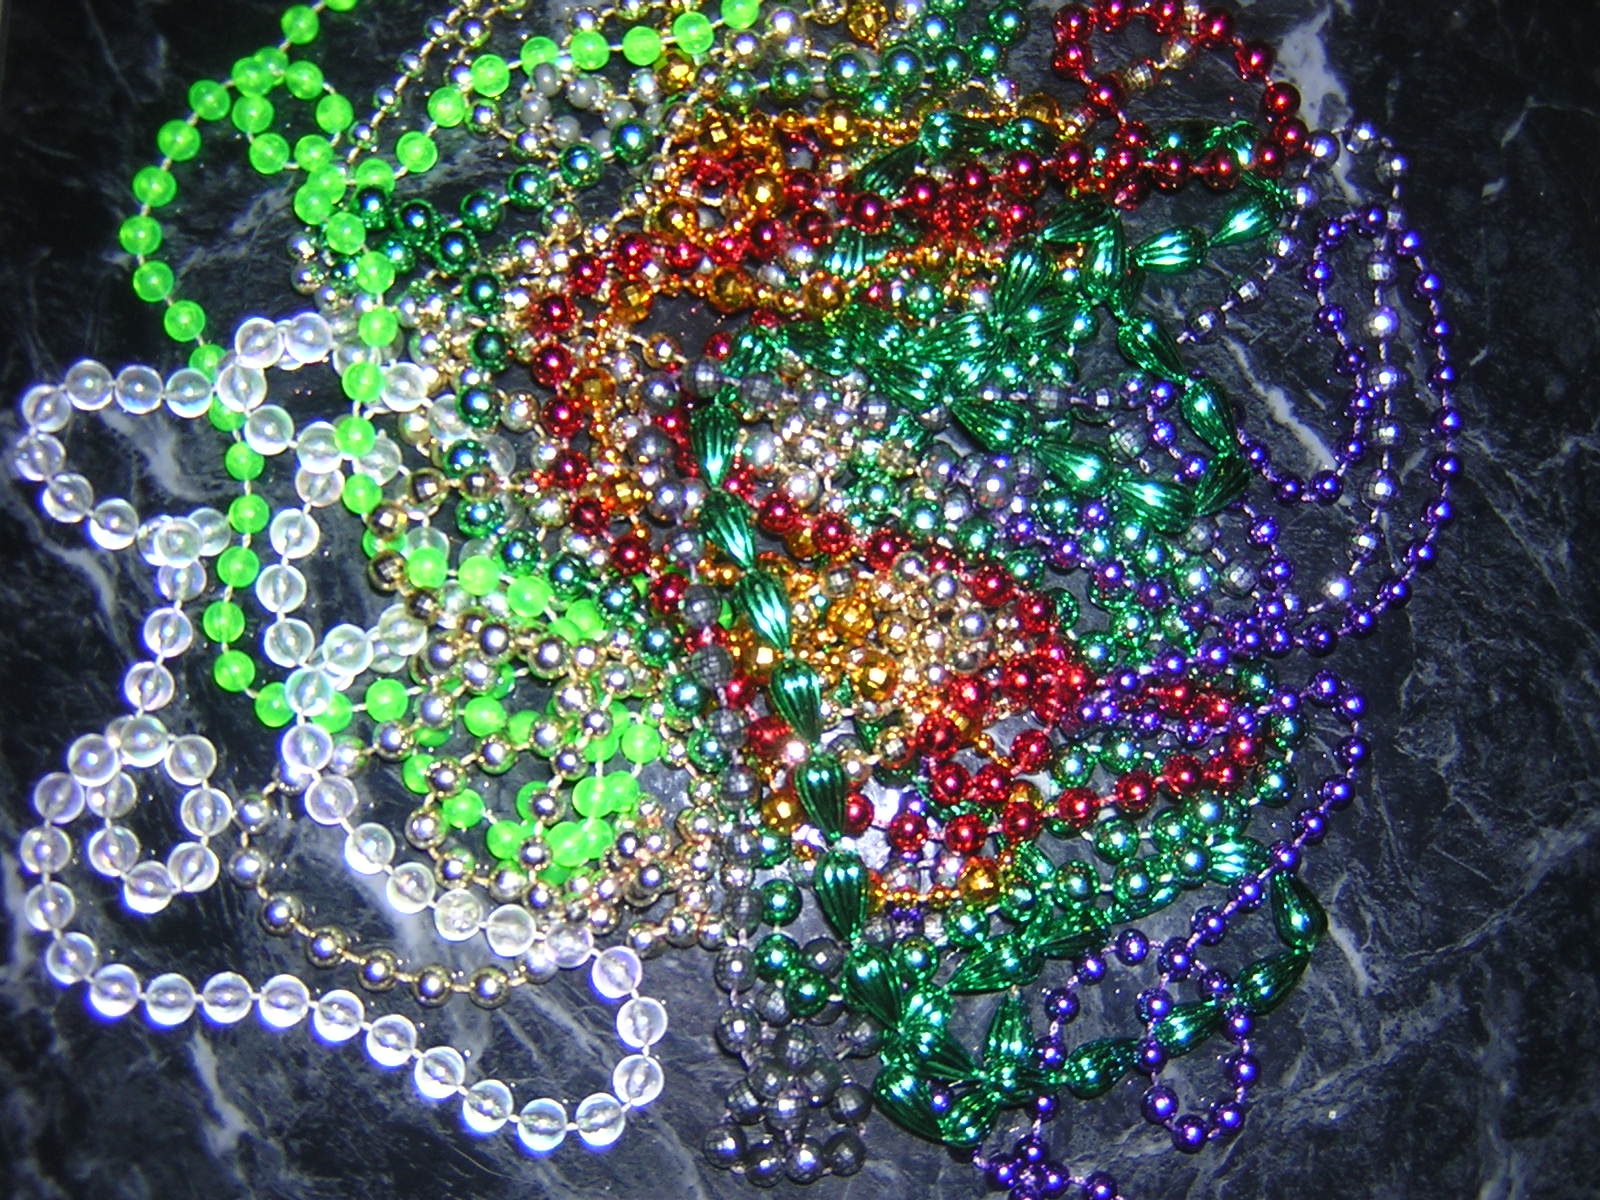 mardi gras beads